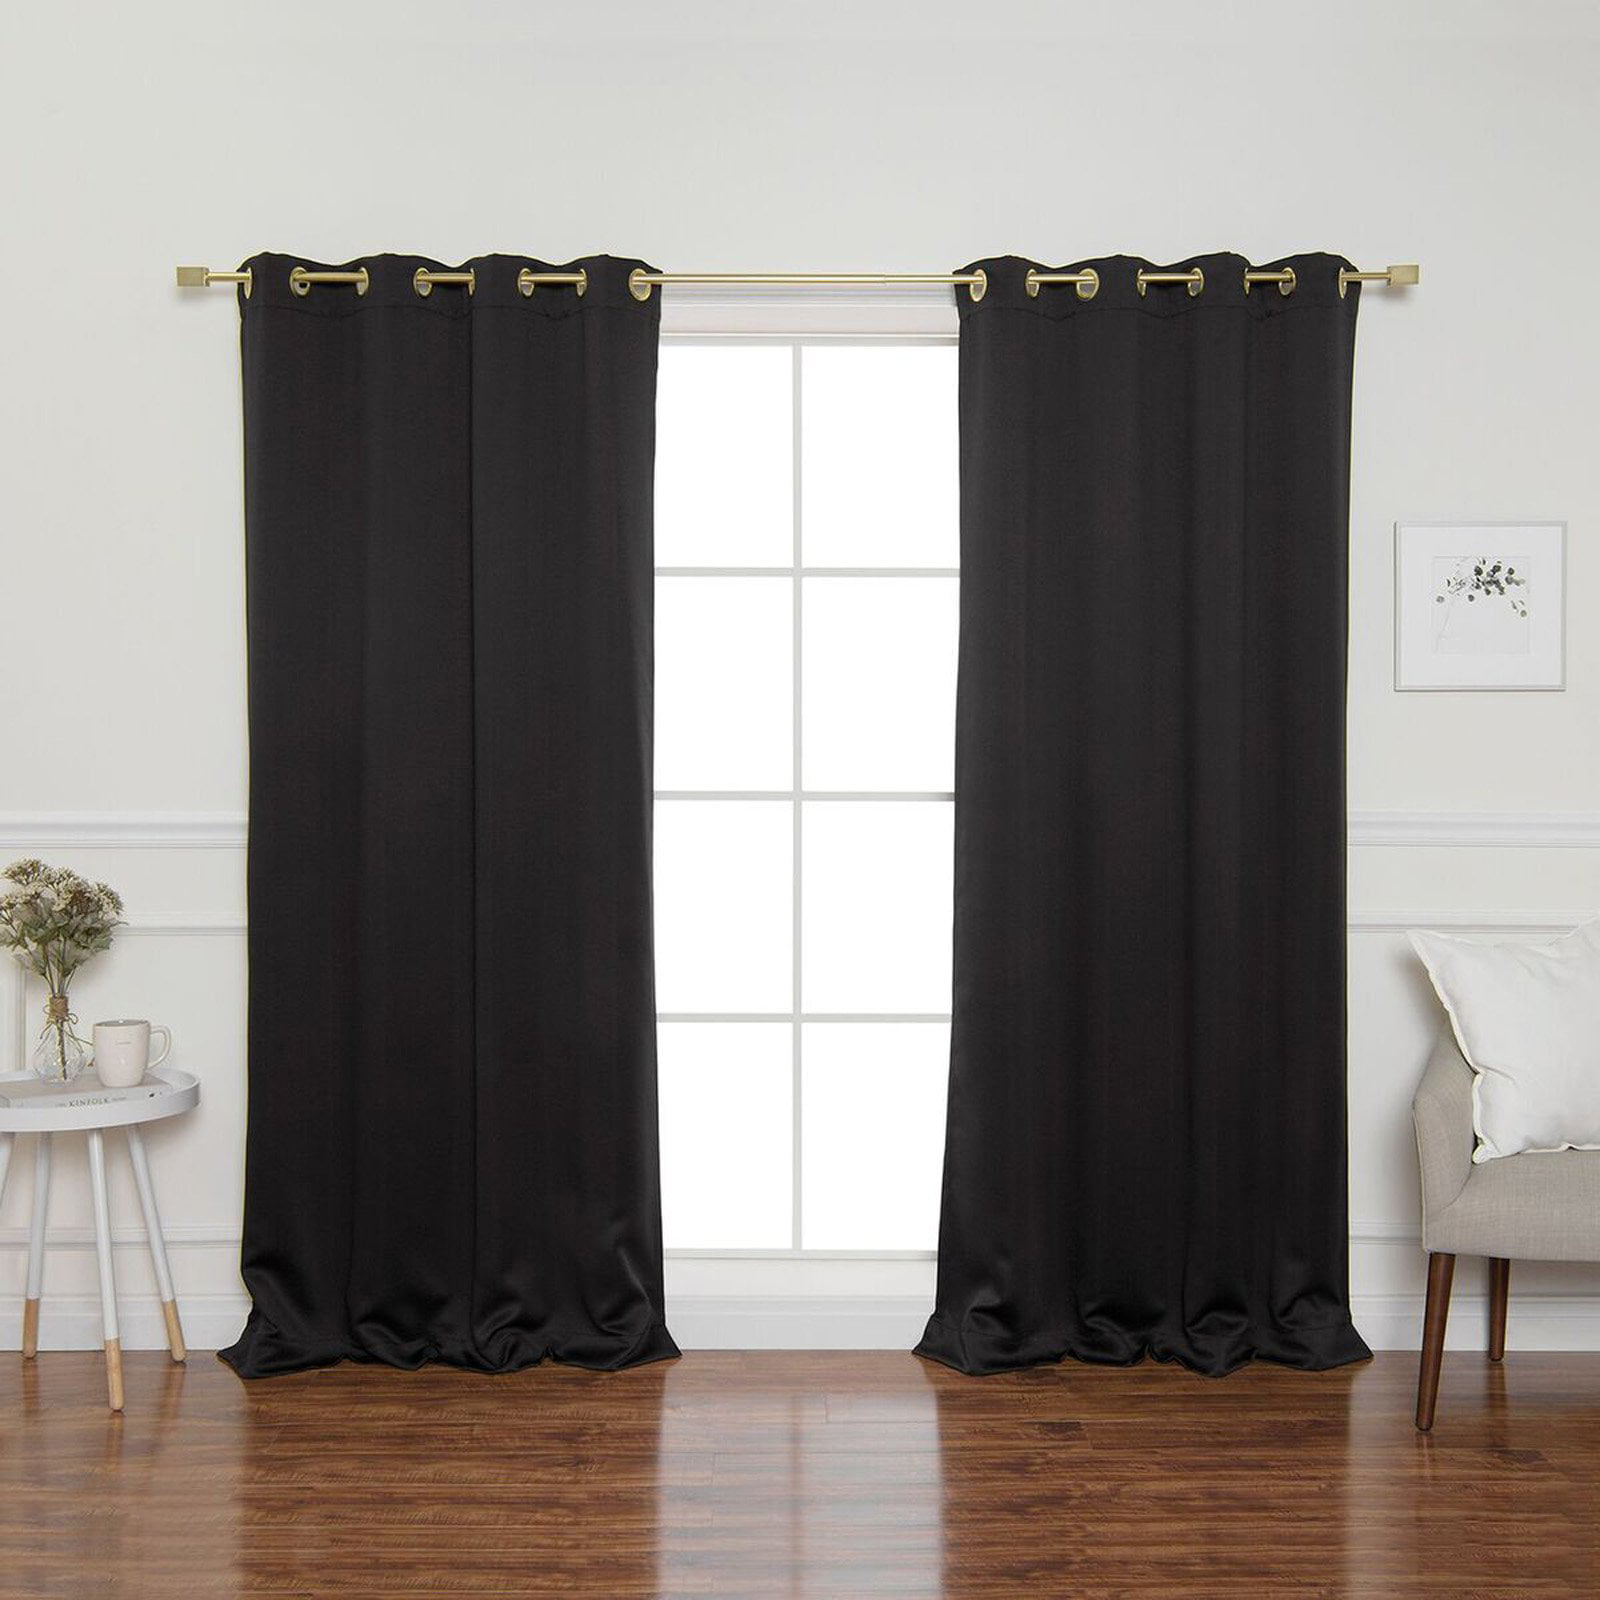 Best Home Fashion Gold Grommet Blackout Curtains - Walmart.com